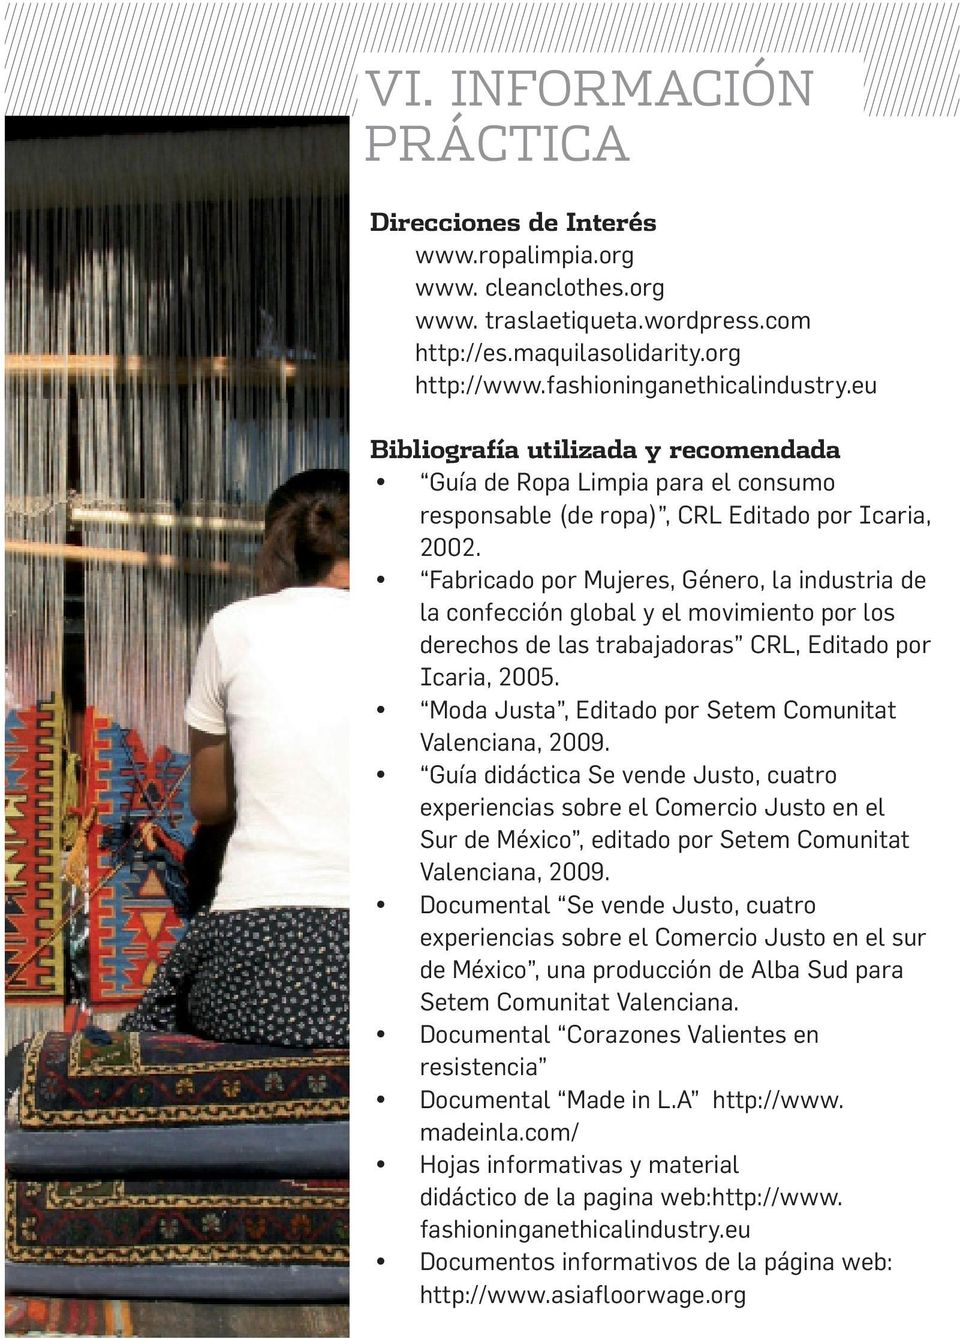 Fabricado por Mujeres, Género, la industria de la confección global y el movimiento por los derechos de las trabajadoras CRL, Editado por Icaria, 2005.